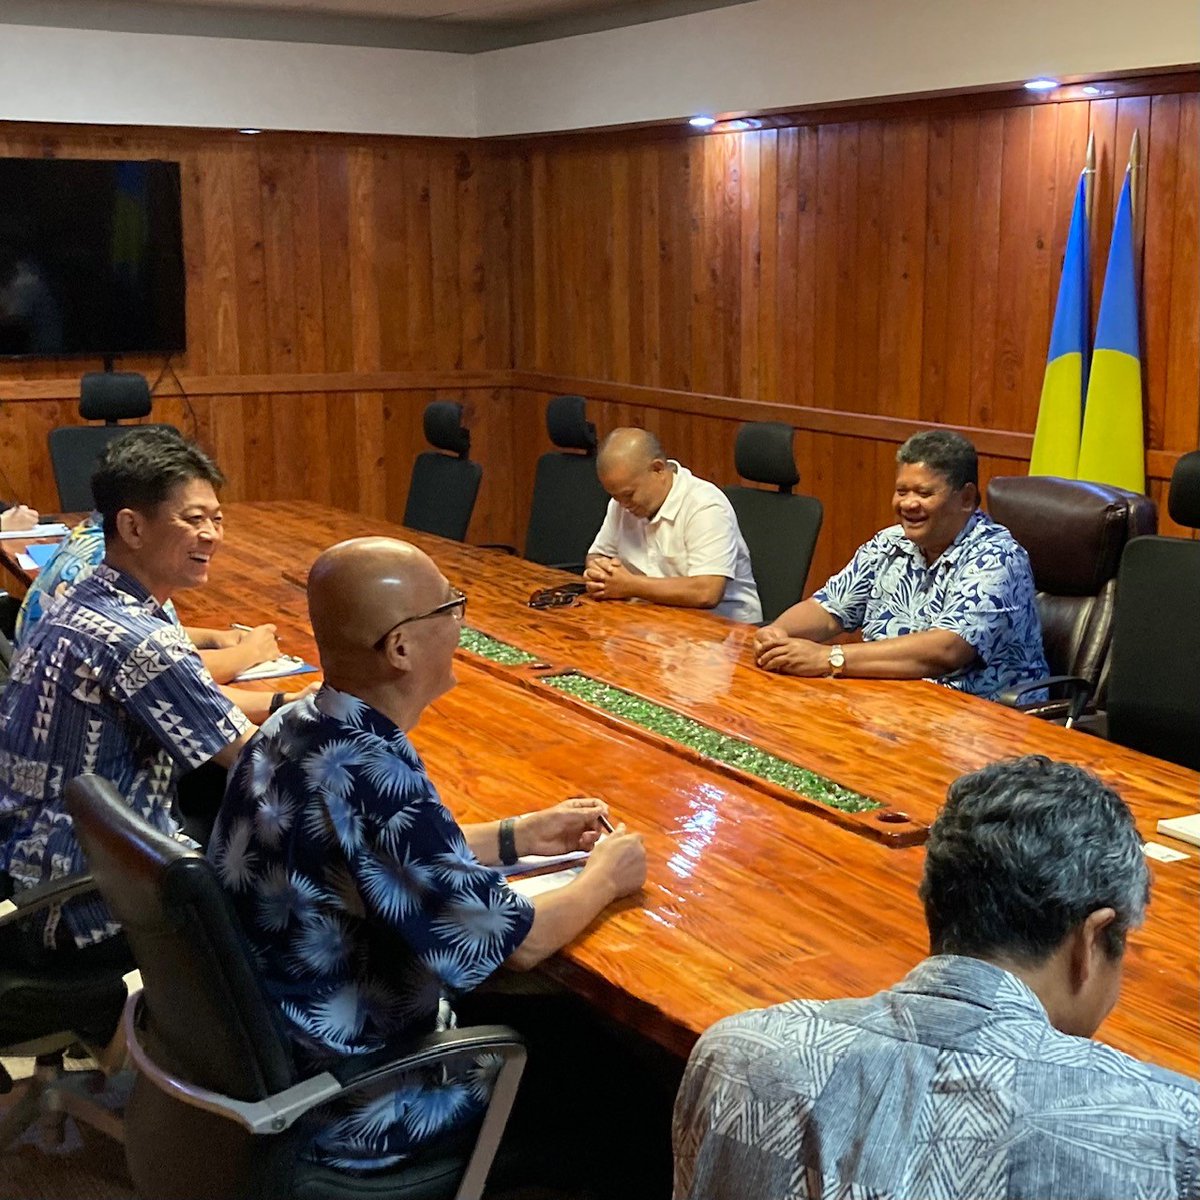 高村外務大臣政務官は、4月29日、ウィップス大統領やアイタロー大臣それぞれとお会いし、日パラオ二国間関係の強化や本年7月に開催される第10回太平洋・島サミット（PALM10）に向けた協力について意見交換を行いました。 #PALM10kizuna @Pacific_mofaj